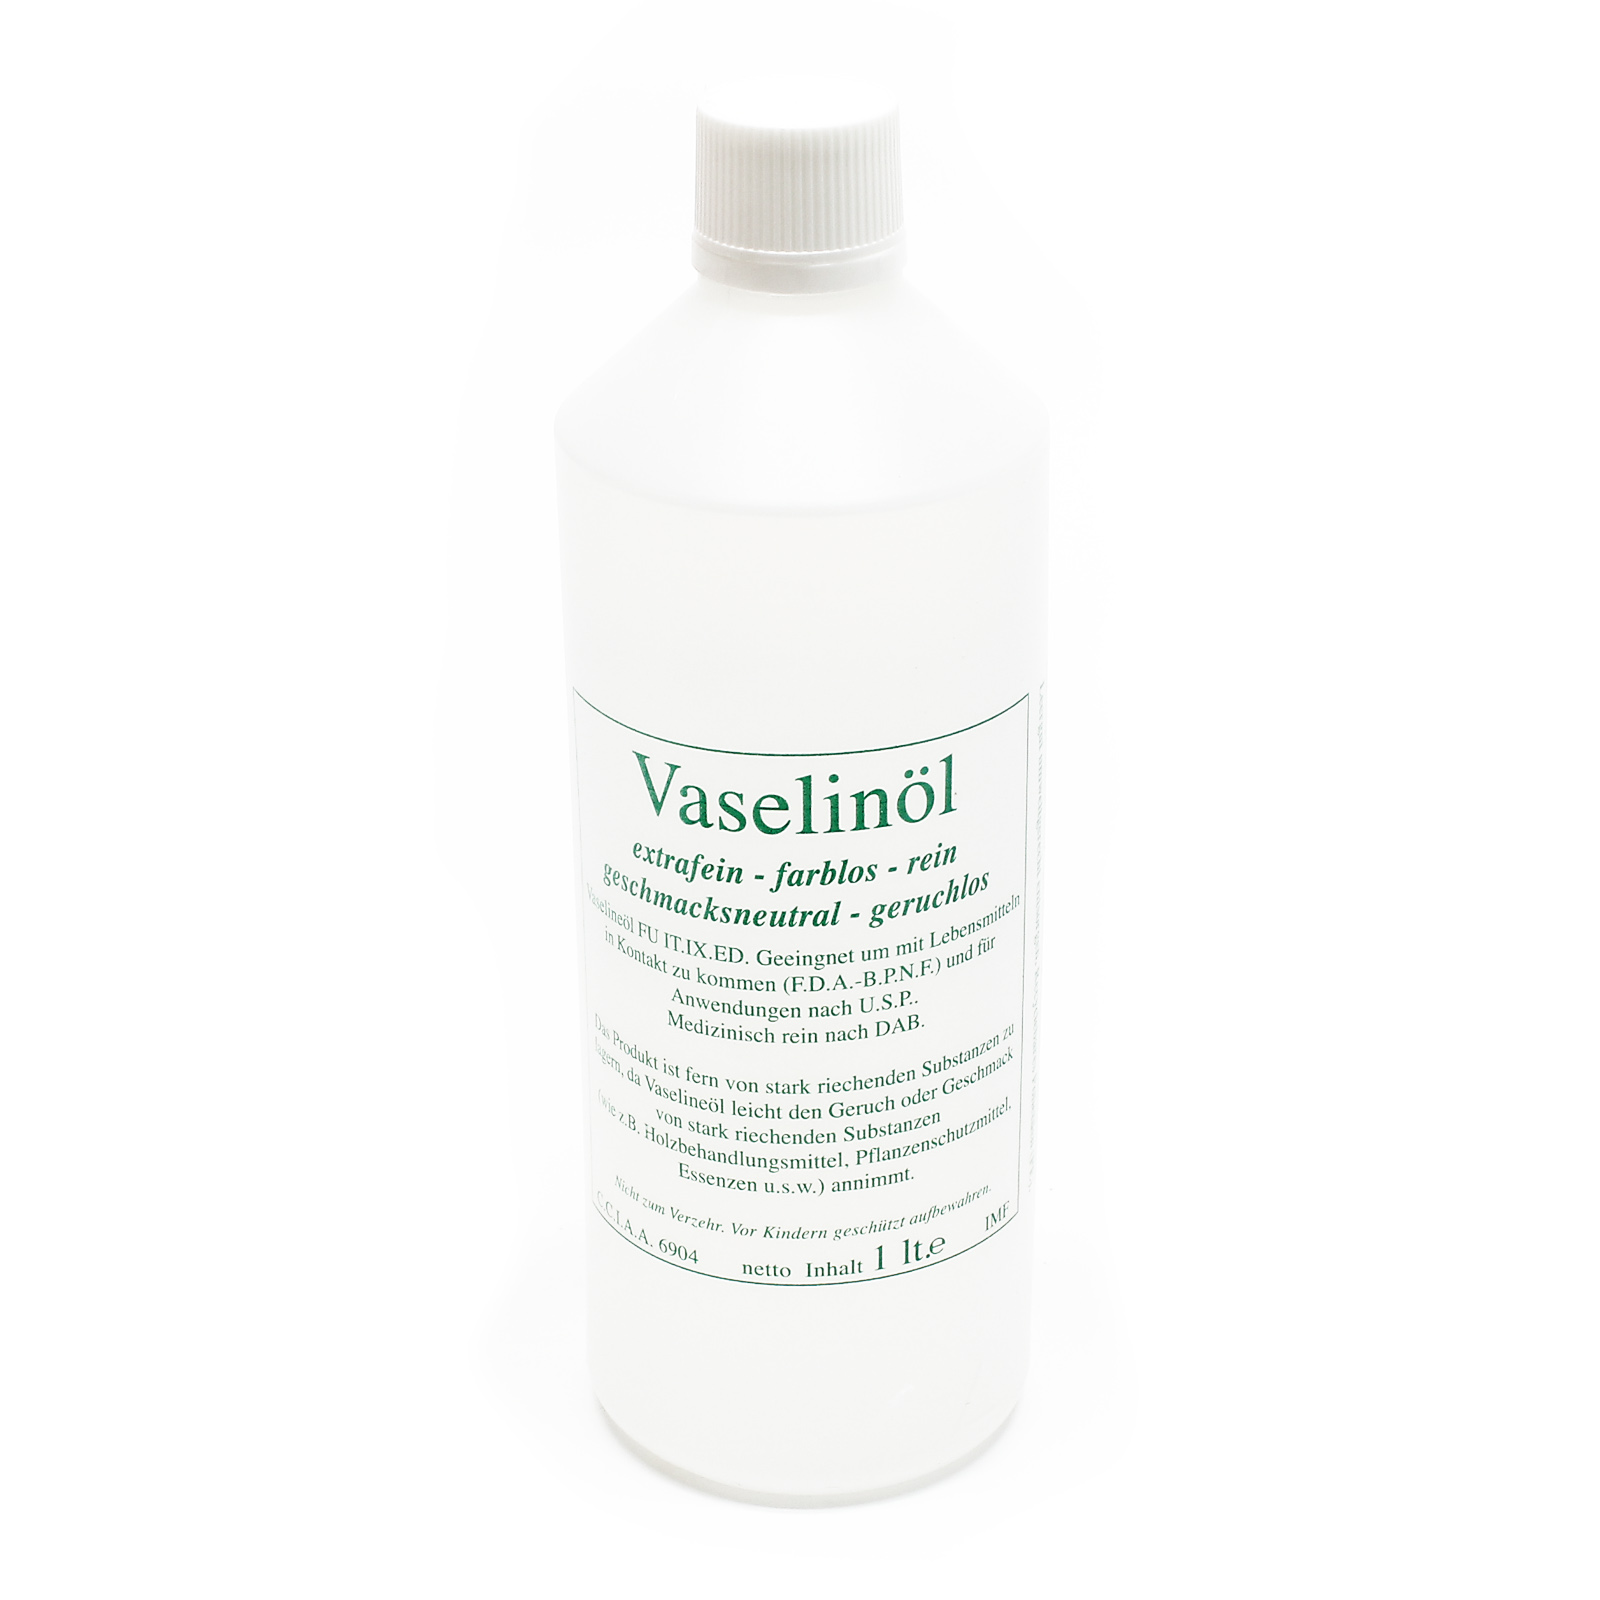 Olio di vaselina Speidel 1l, per alimenti, insapore. Purea, succo